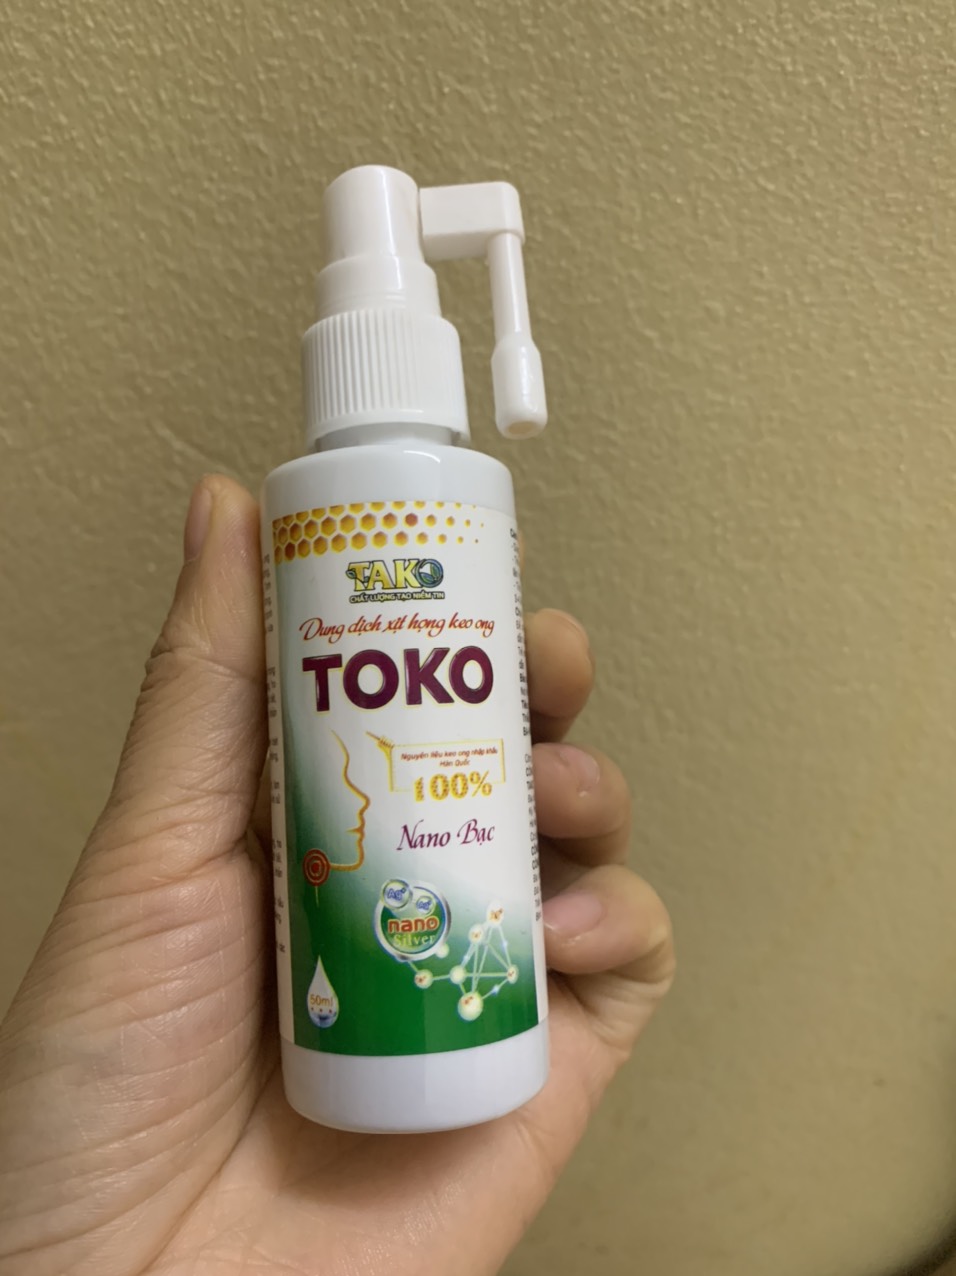 Dung dịch xịt họng keo ong TOKO Tako nguyên liệu keo ong nhập khẩu Hàn Quốc, Nano bạc chai lớn 50ml